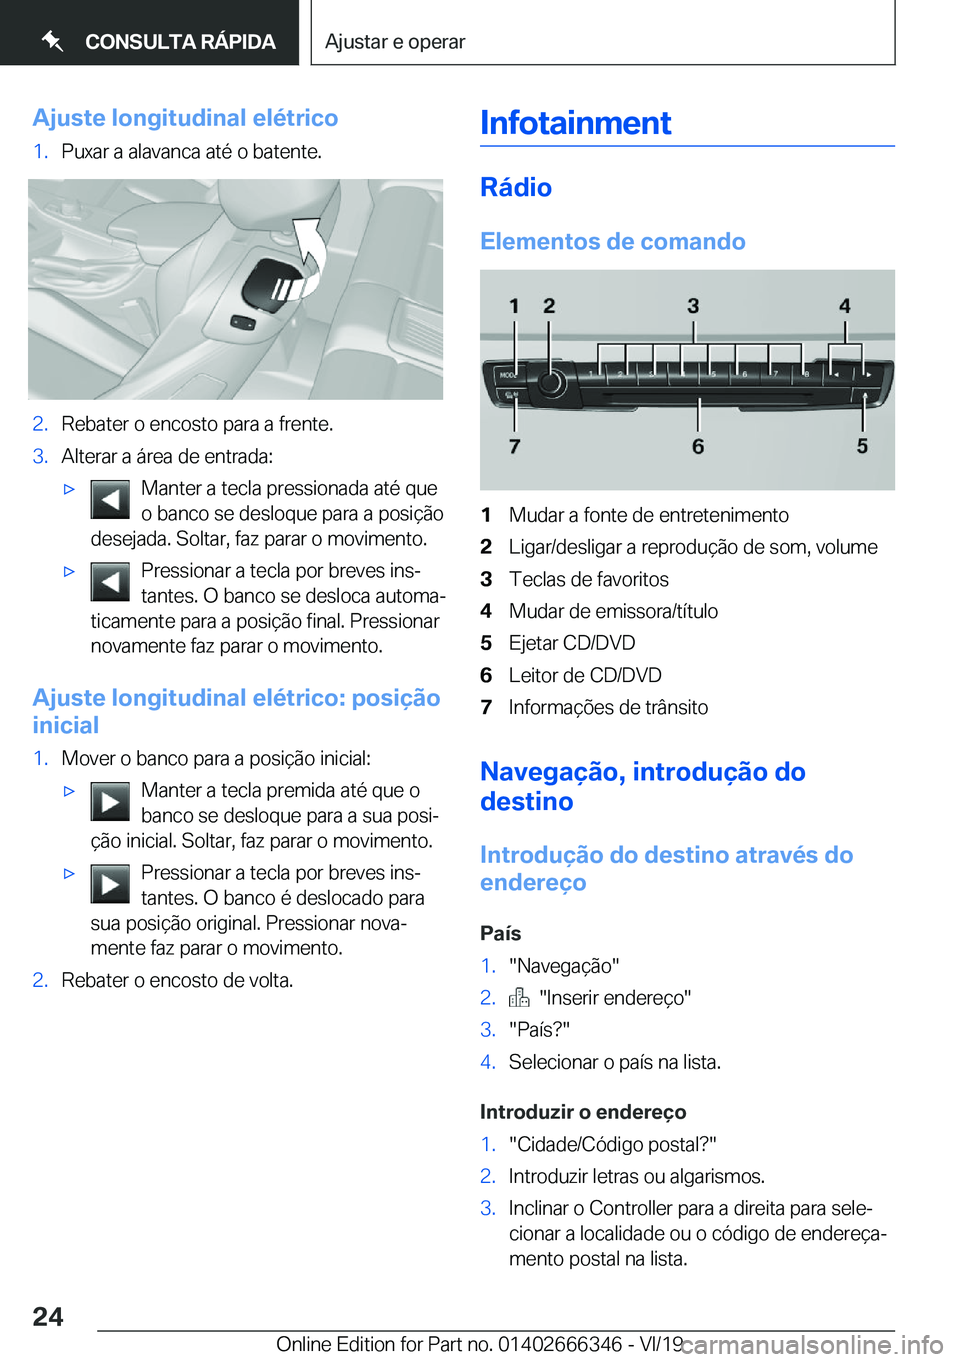 BMW 4 SERIES COUPE 2020  Manual do condutor (in Portuguese) �A�j�u�s�t�e��l�o�n�g�i�t�u�d�i�n�a�l��e�l�é�t�r�i�c�o�1�.�P�u�x�a�r��a��a�l�a�v�a�n�c�a��a�t�é��o��b�a�t�e�n�t�e�.�2�.�R�e�b�a�t�e�r��o��e�n�c�o�s�t�o��p�a�r�a��a��f�r�e�n�t�e�.�3�.�A�l